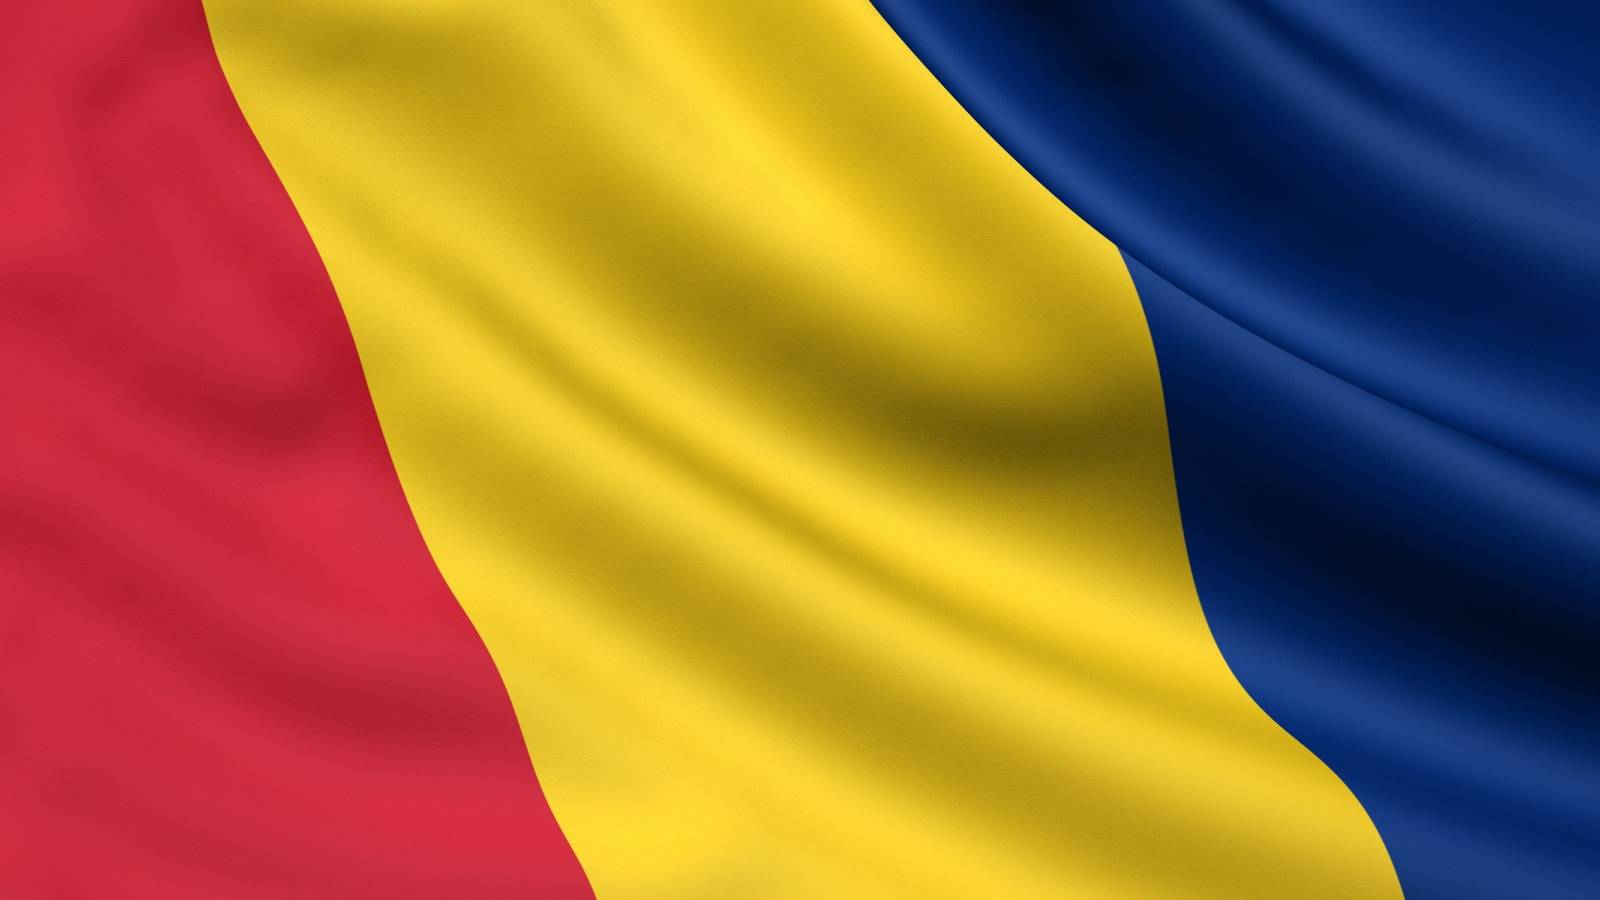 Liste der Länder mit hohem epidemiologischen Risiko der rumänischen Regierung aktualisiert